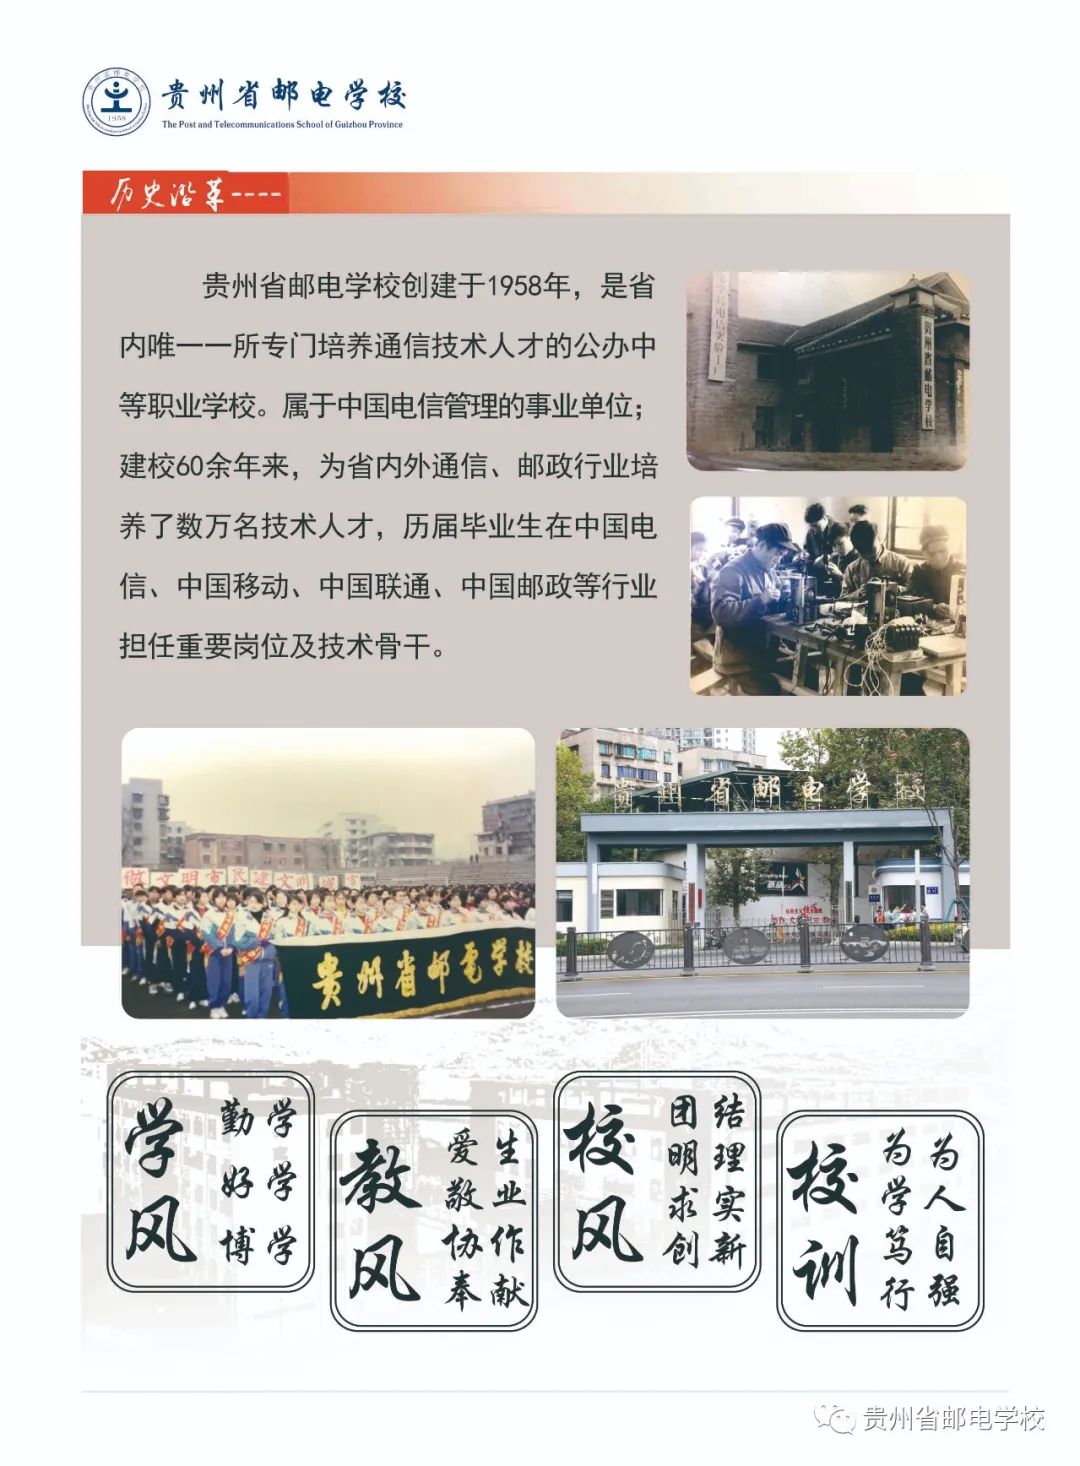 贵州省邮电学校2022年招生简章